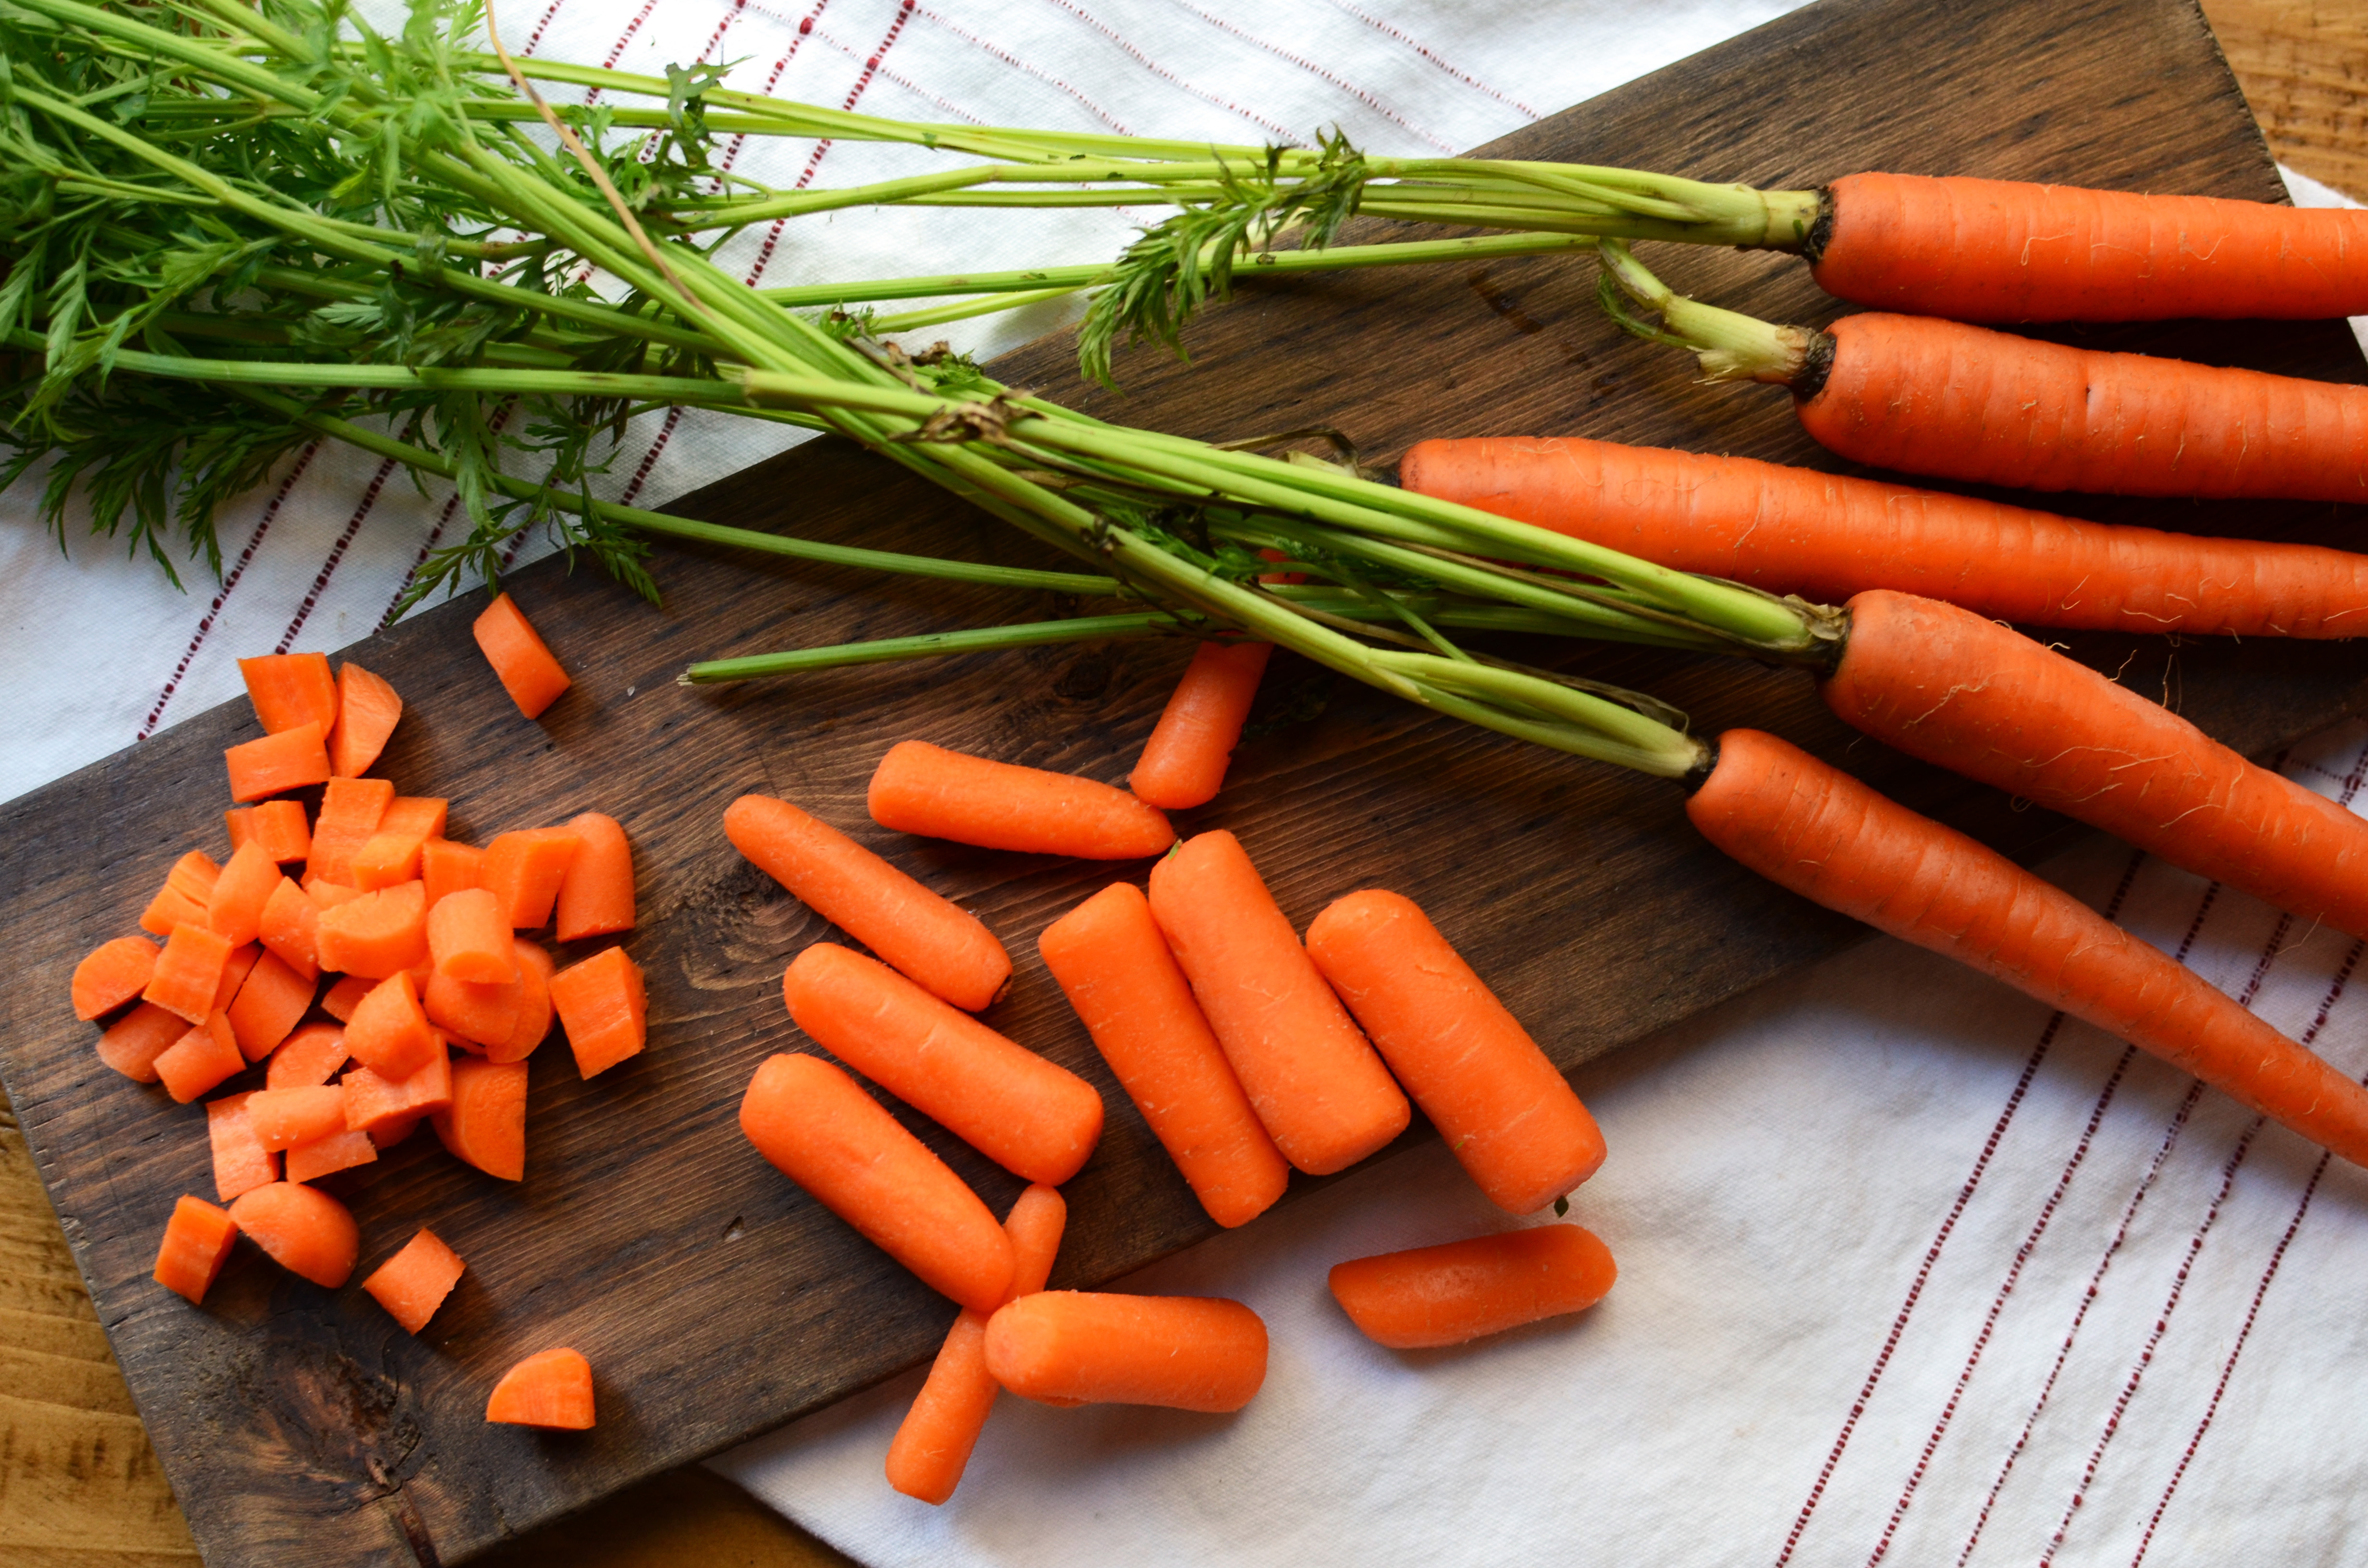 นอกจากสุขภาพตาที่ดีแล้ว 7 คุณประโยชน์ยังทำให้เราอยากกินแครอท